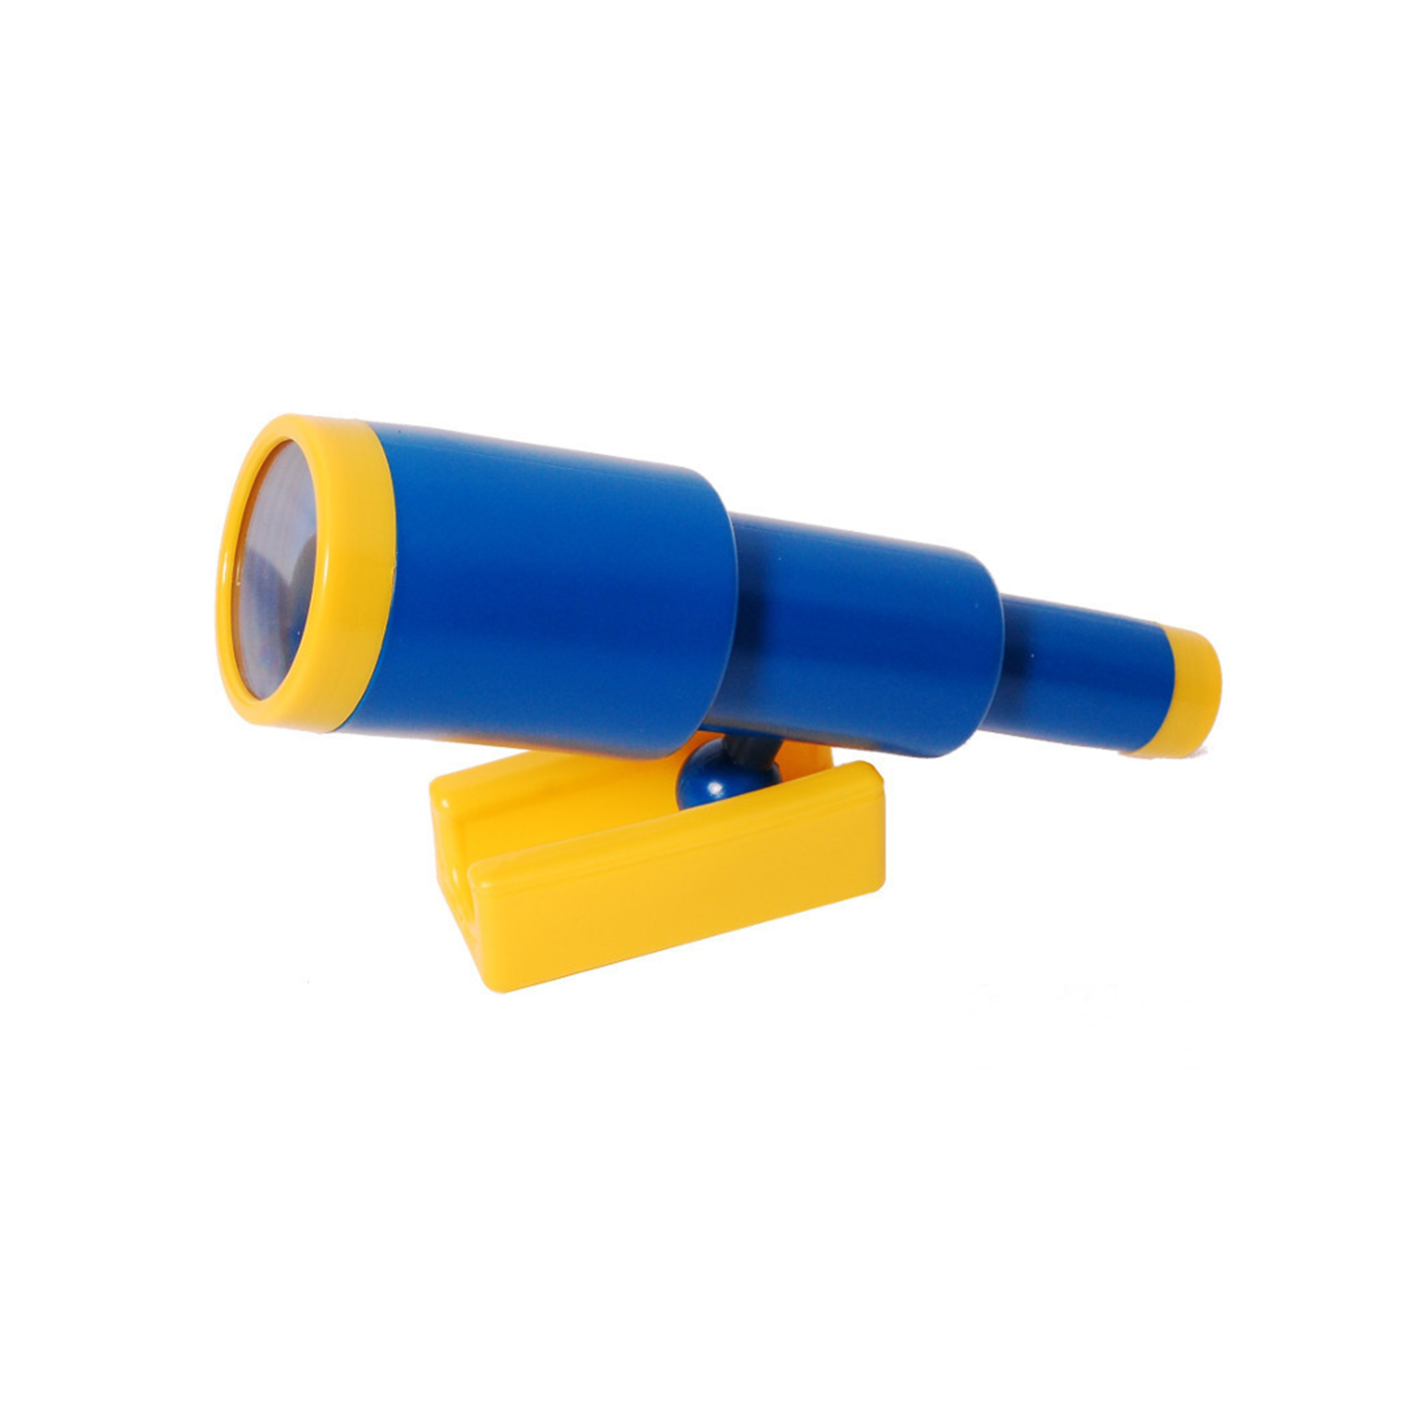 Vaikiškas teleskopas XL, mėlynas su geltonu